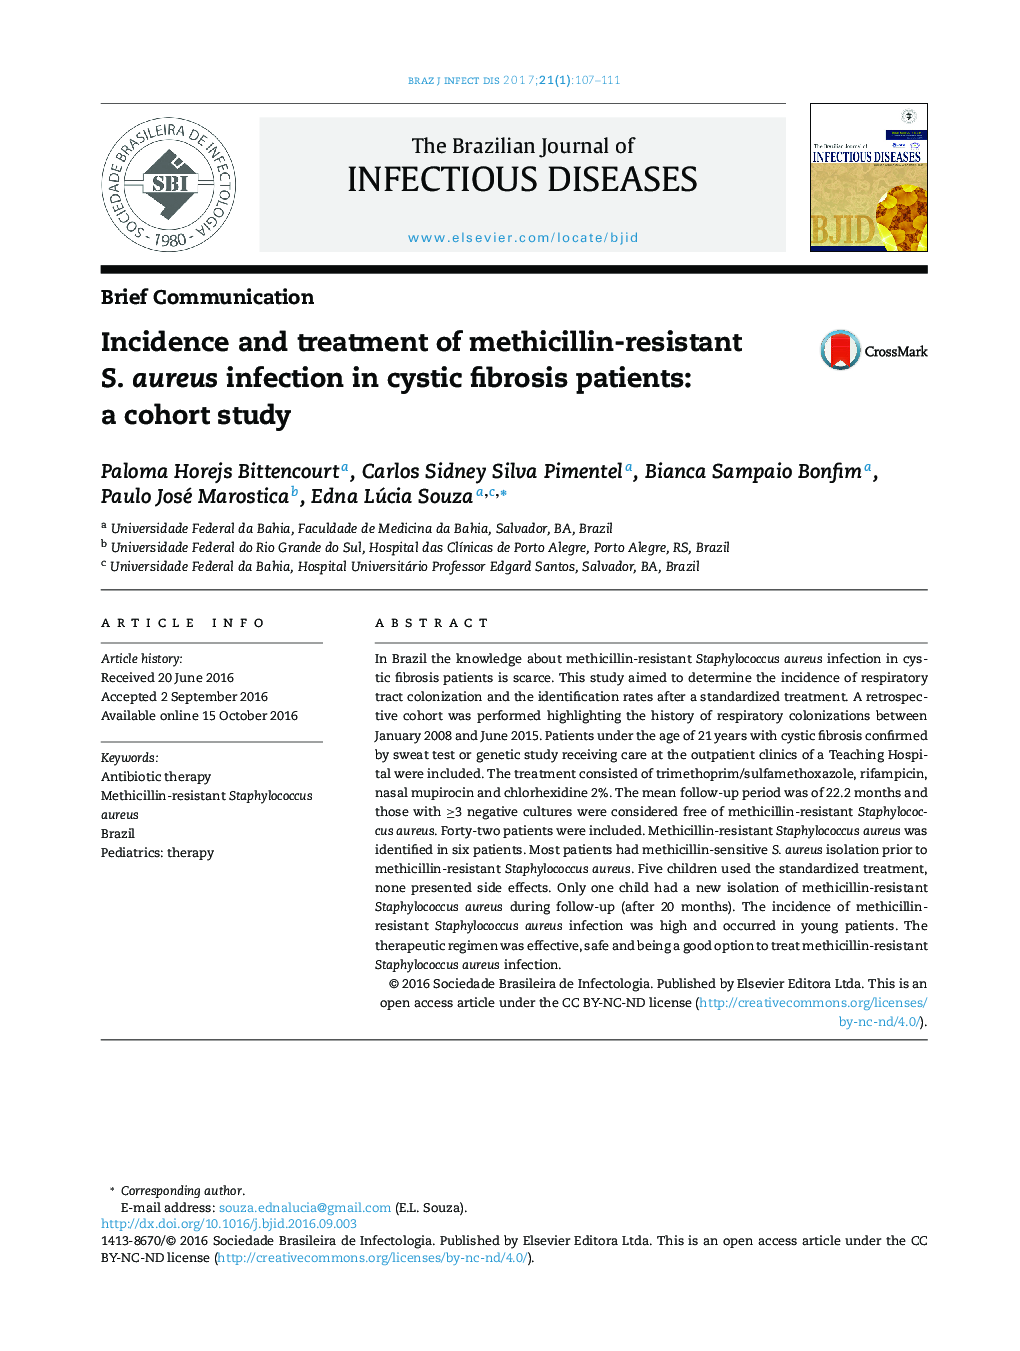 بروز و درمان عفونت S. aureus مقاوم به متیسیلین در بیماران مبتلا به فیبروز کیستیک: مطالعه کوهورت